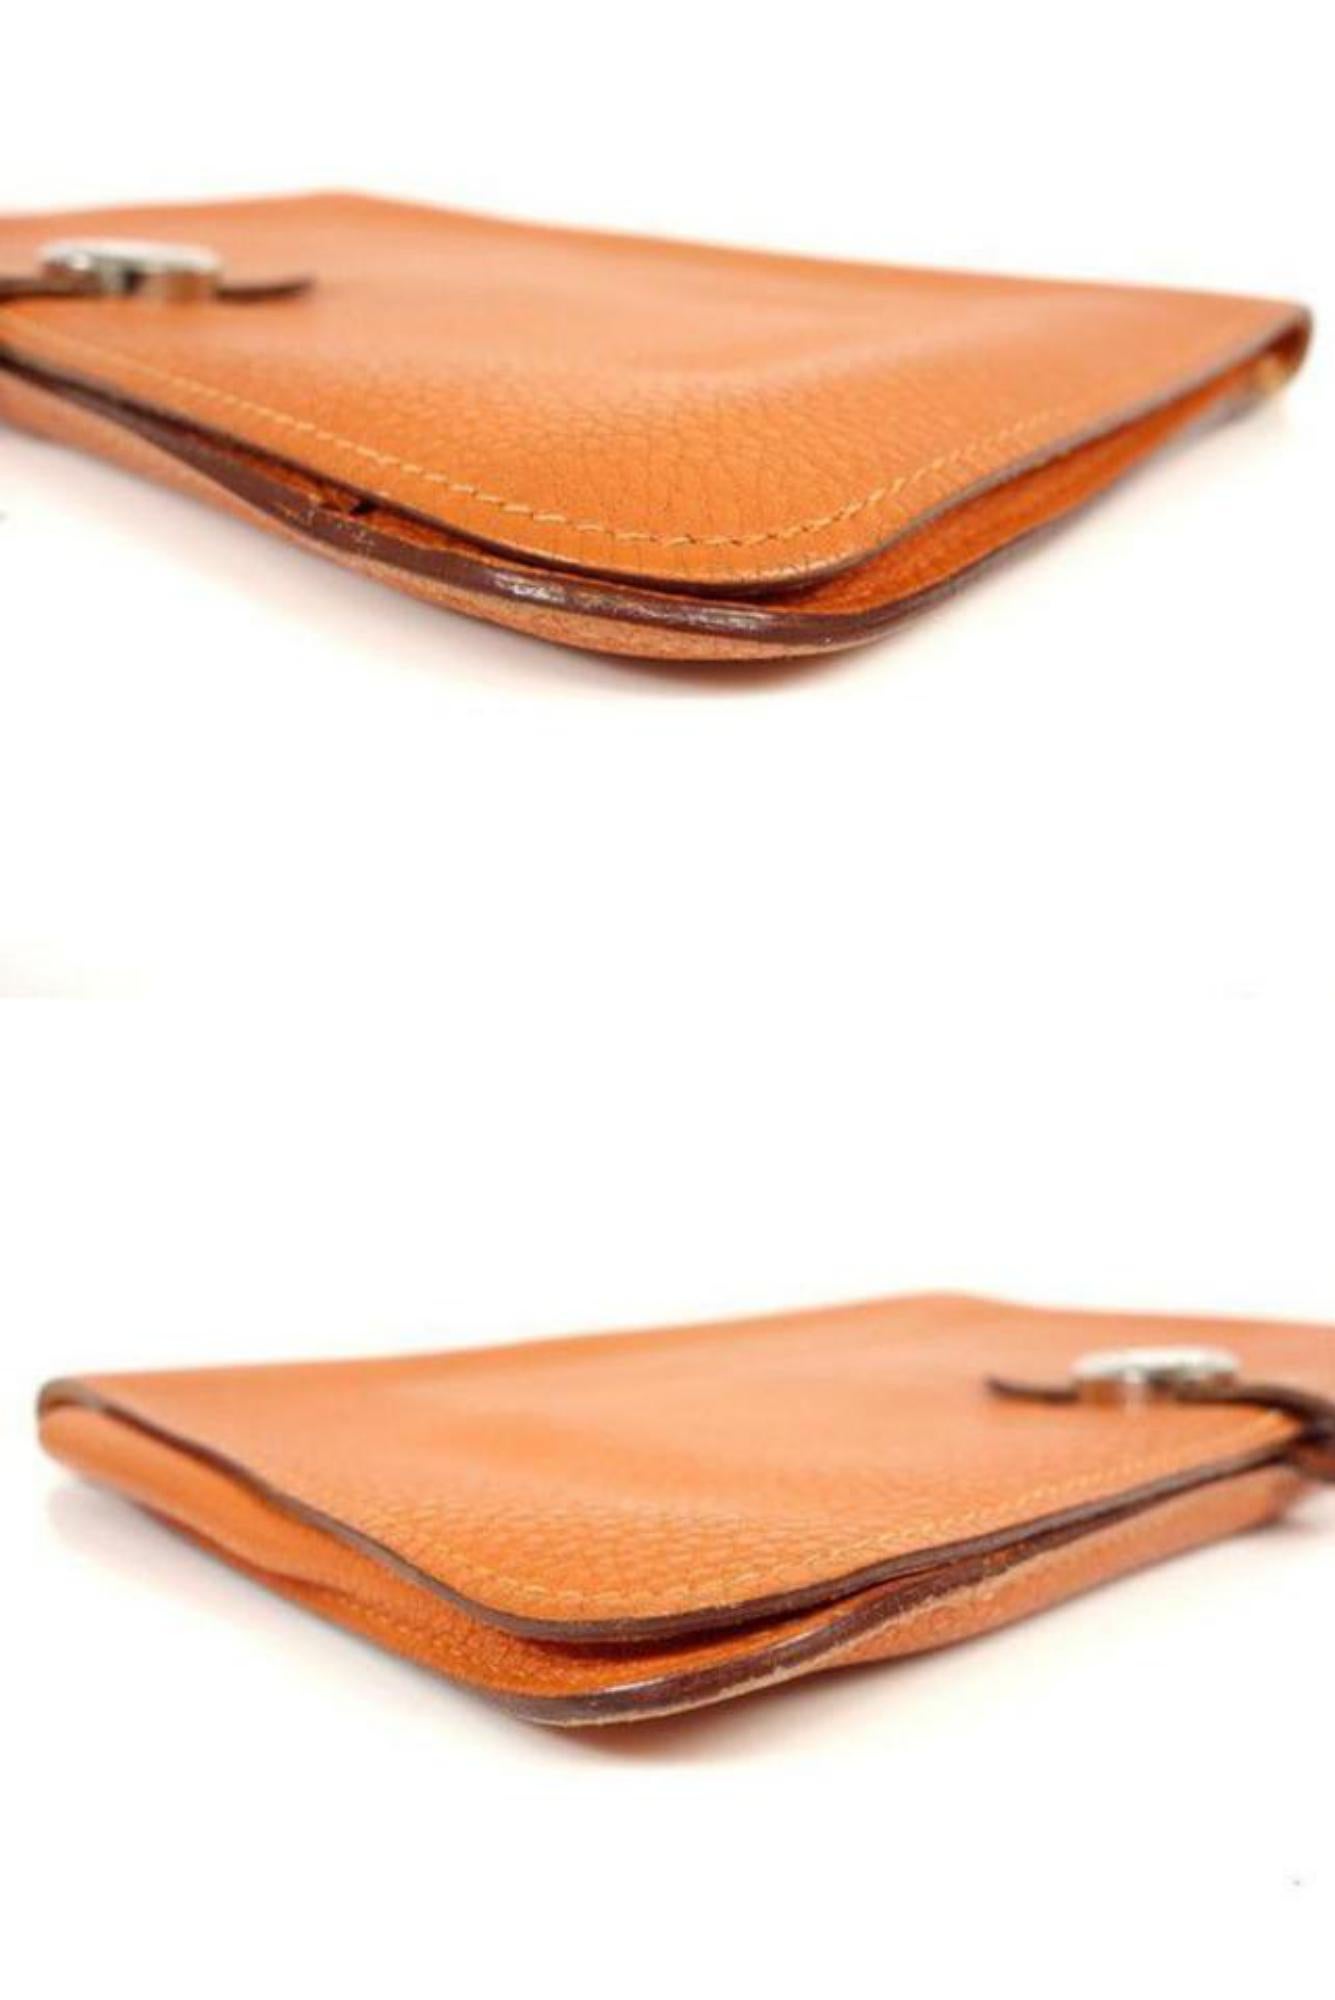 Hermès Orange Togo Leather Dogon Wallet 232H857 For Sale 2